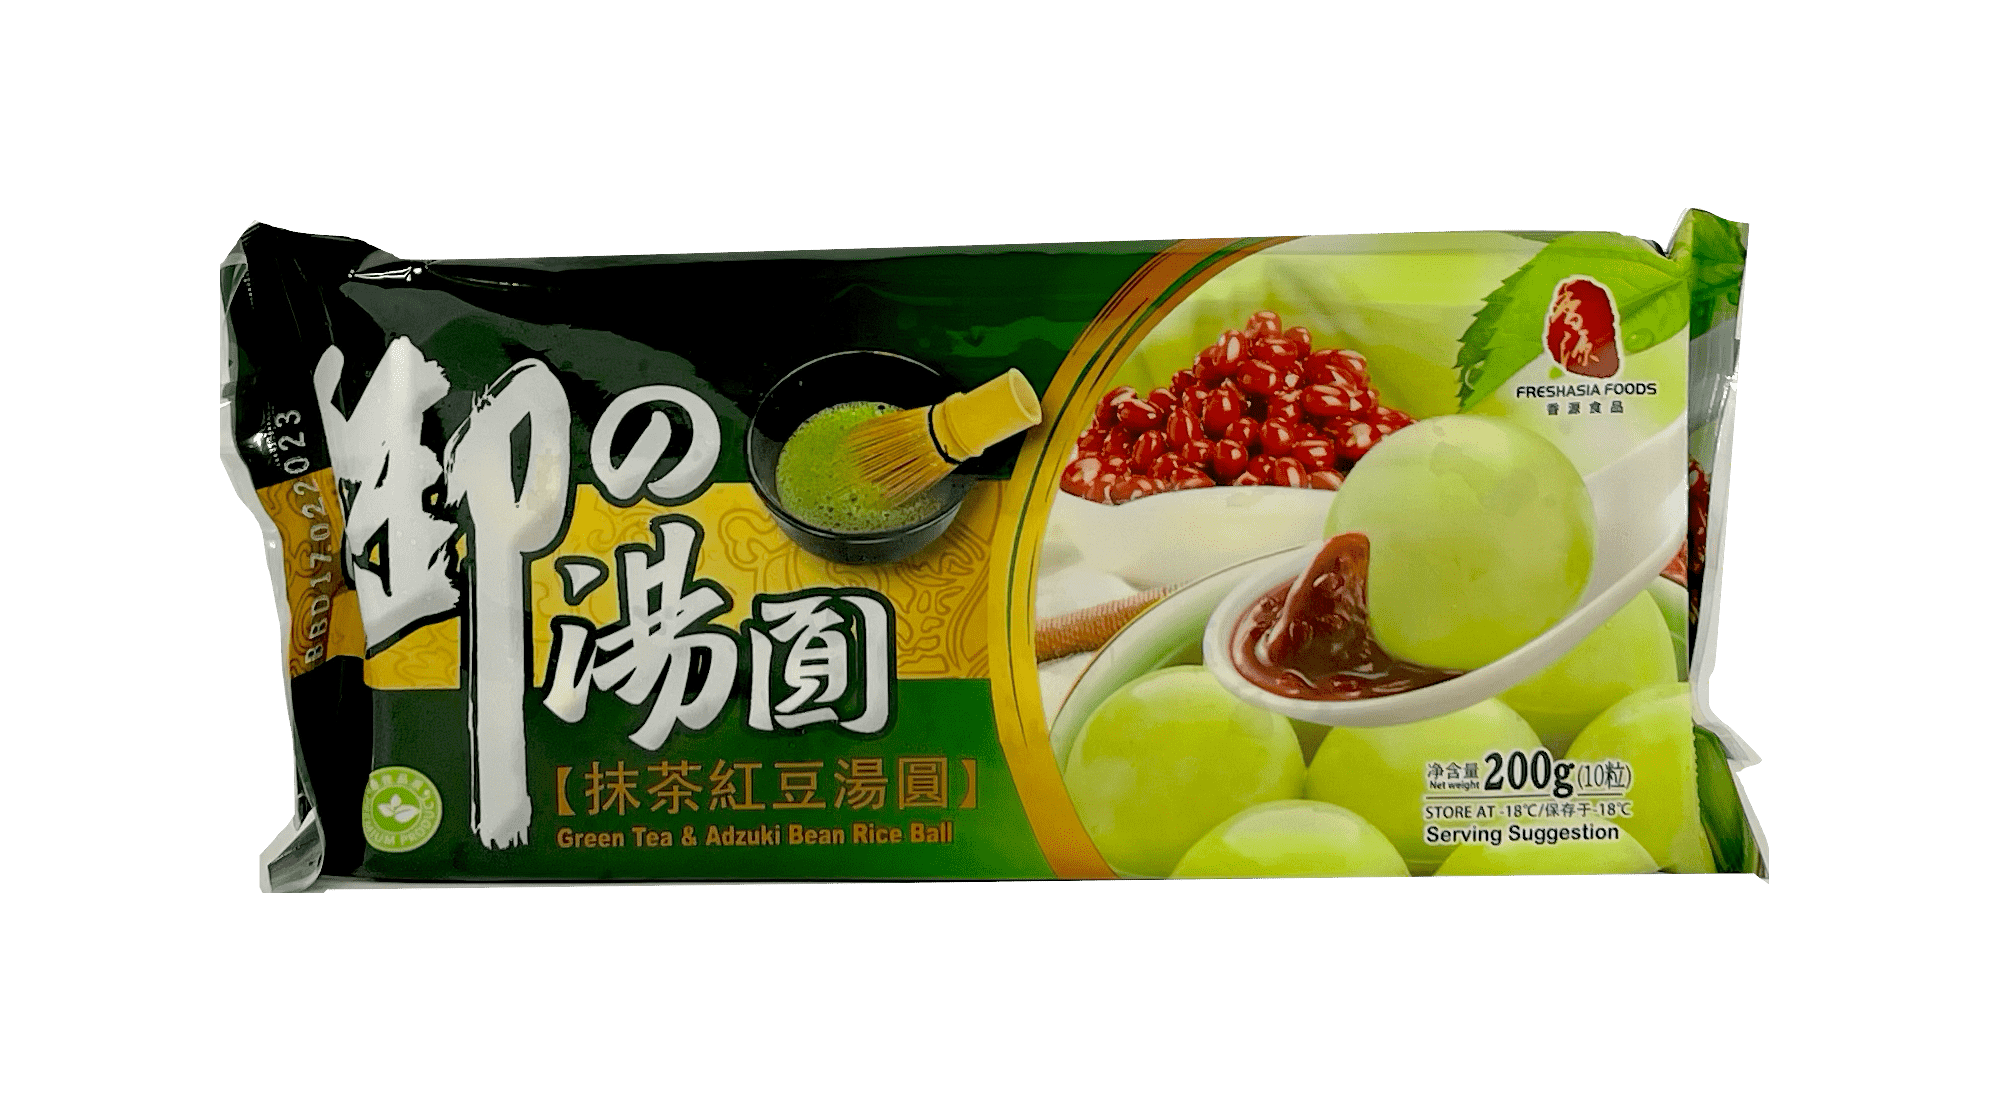 Green Tea & Adzuki Bean Rice Ball Frozen 200g Freshasia Tawai